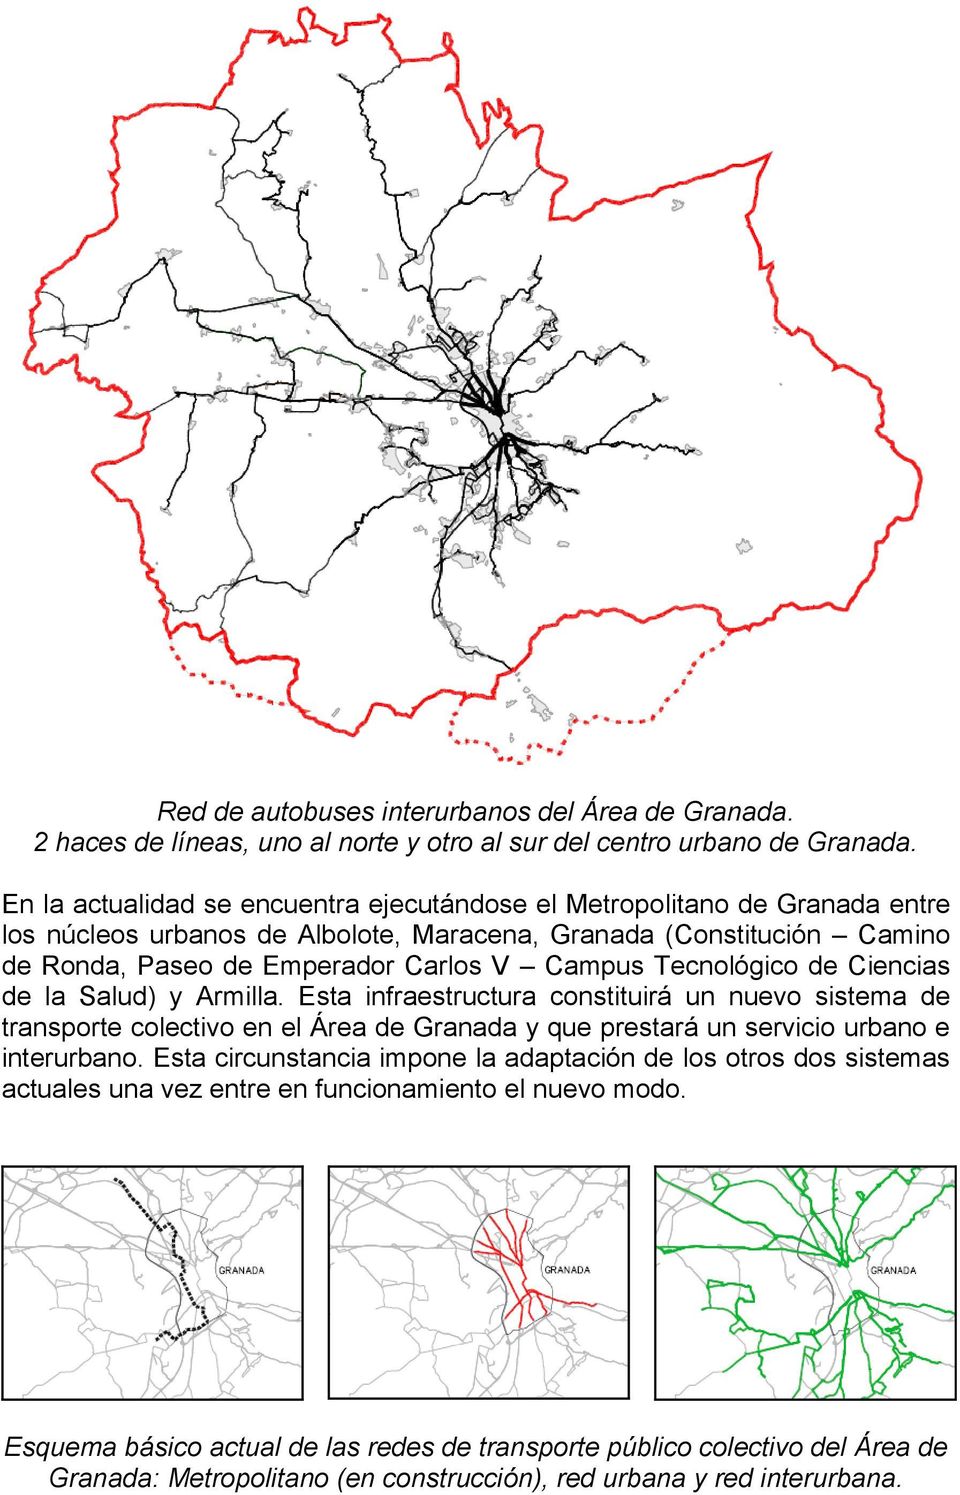 Tecnológico de Ciencias de la Salud) y Armilla. Esta infraestructura constituirá un nuevo sistema de transporte colectivo en el Área de Granada y que prestará un servicio urbano e interurbano.